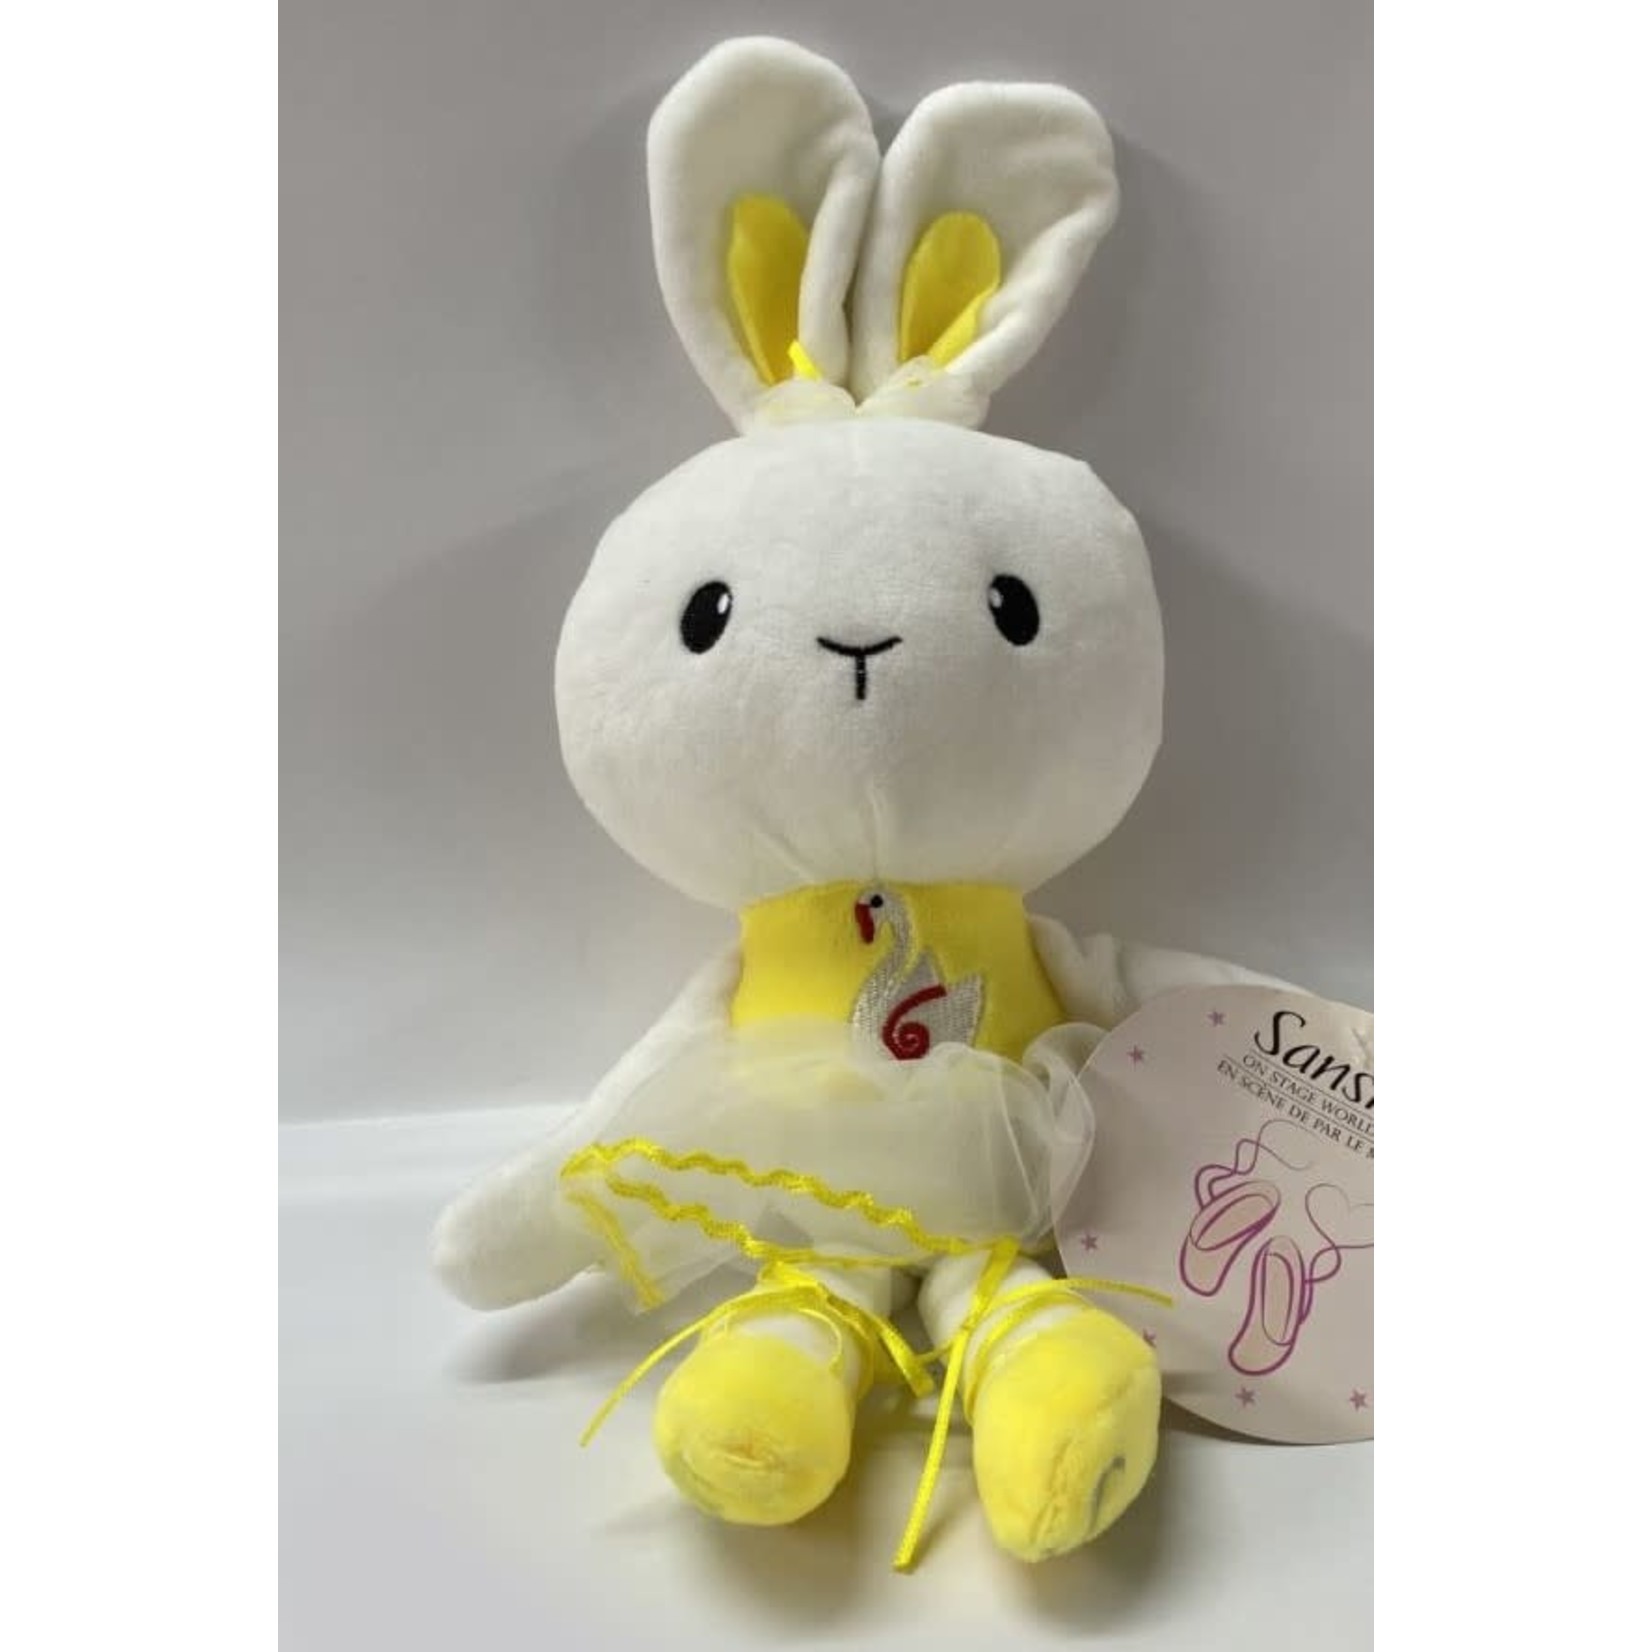 Sansha Sansha DOLL01 Bunny Doll